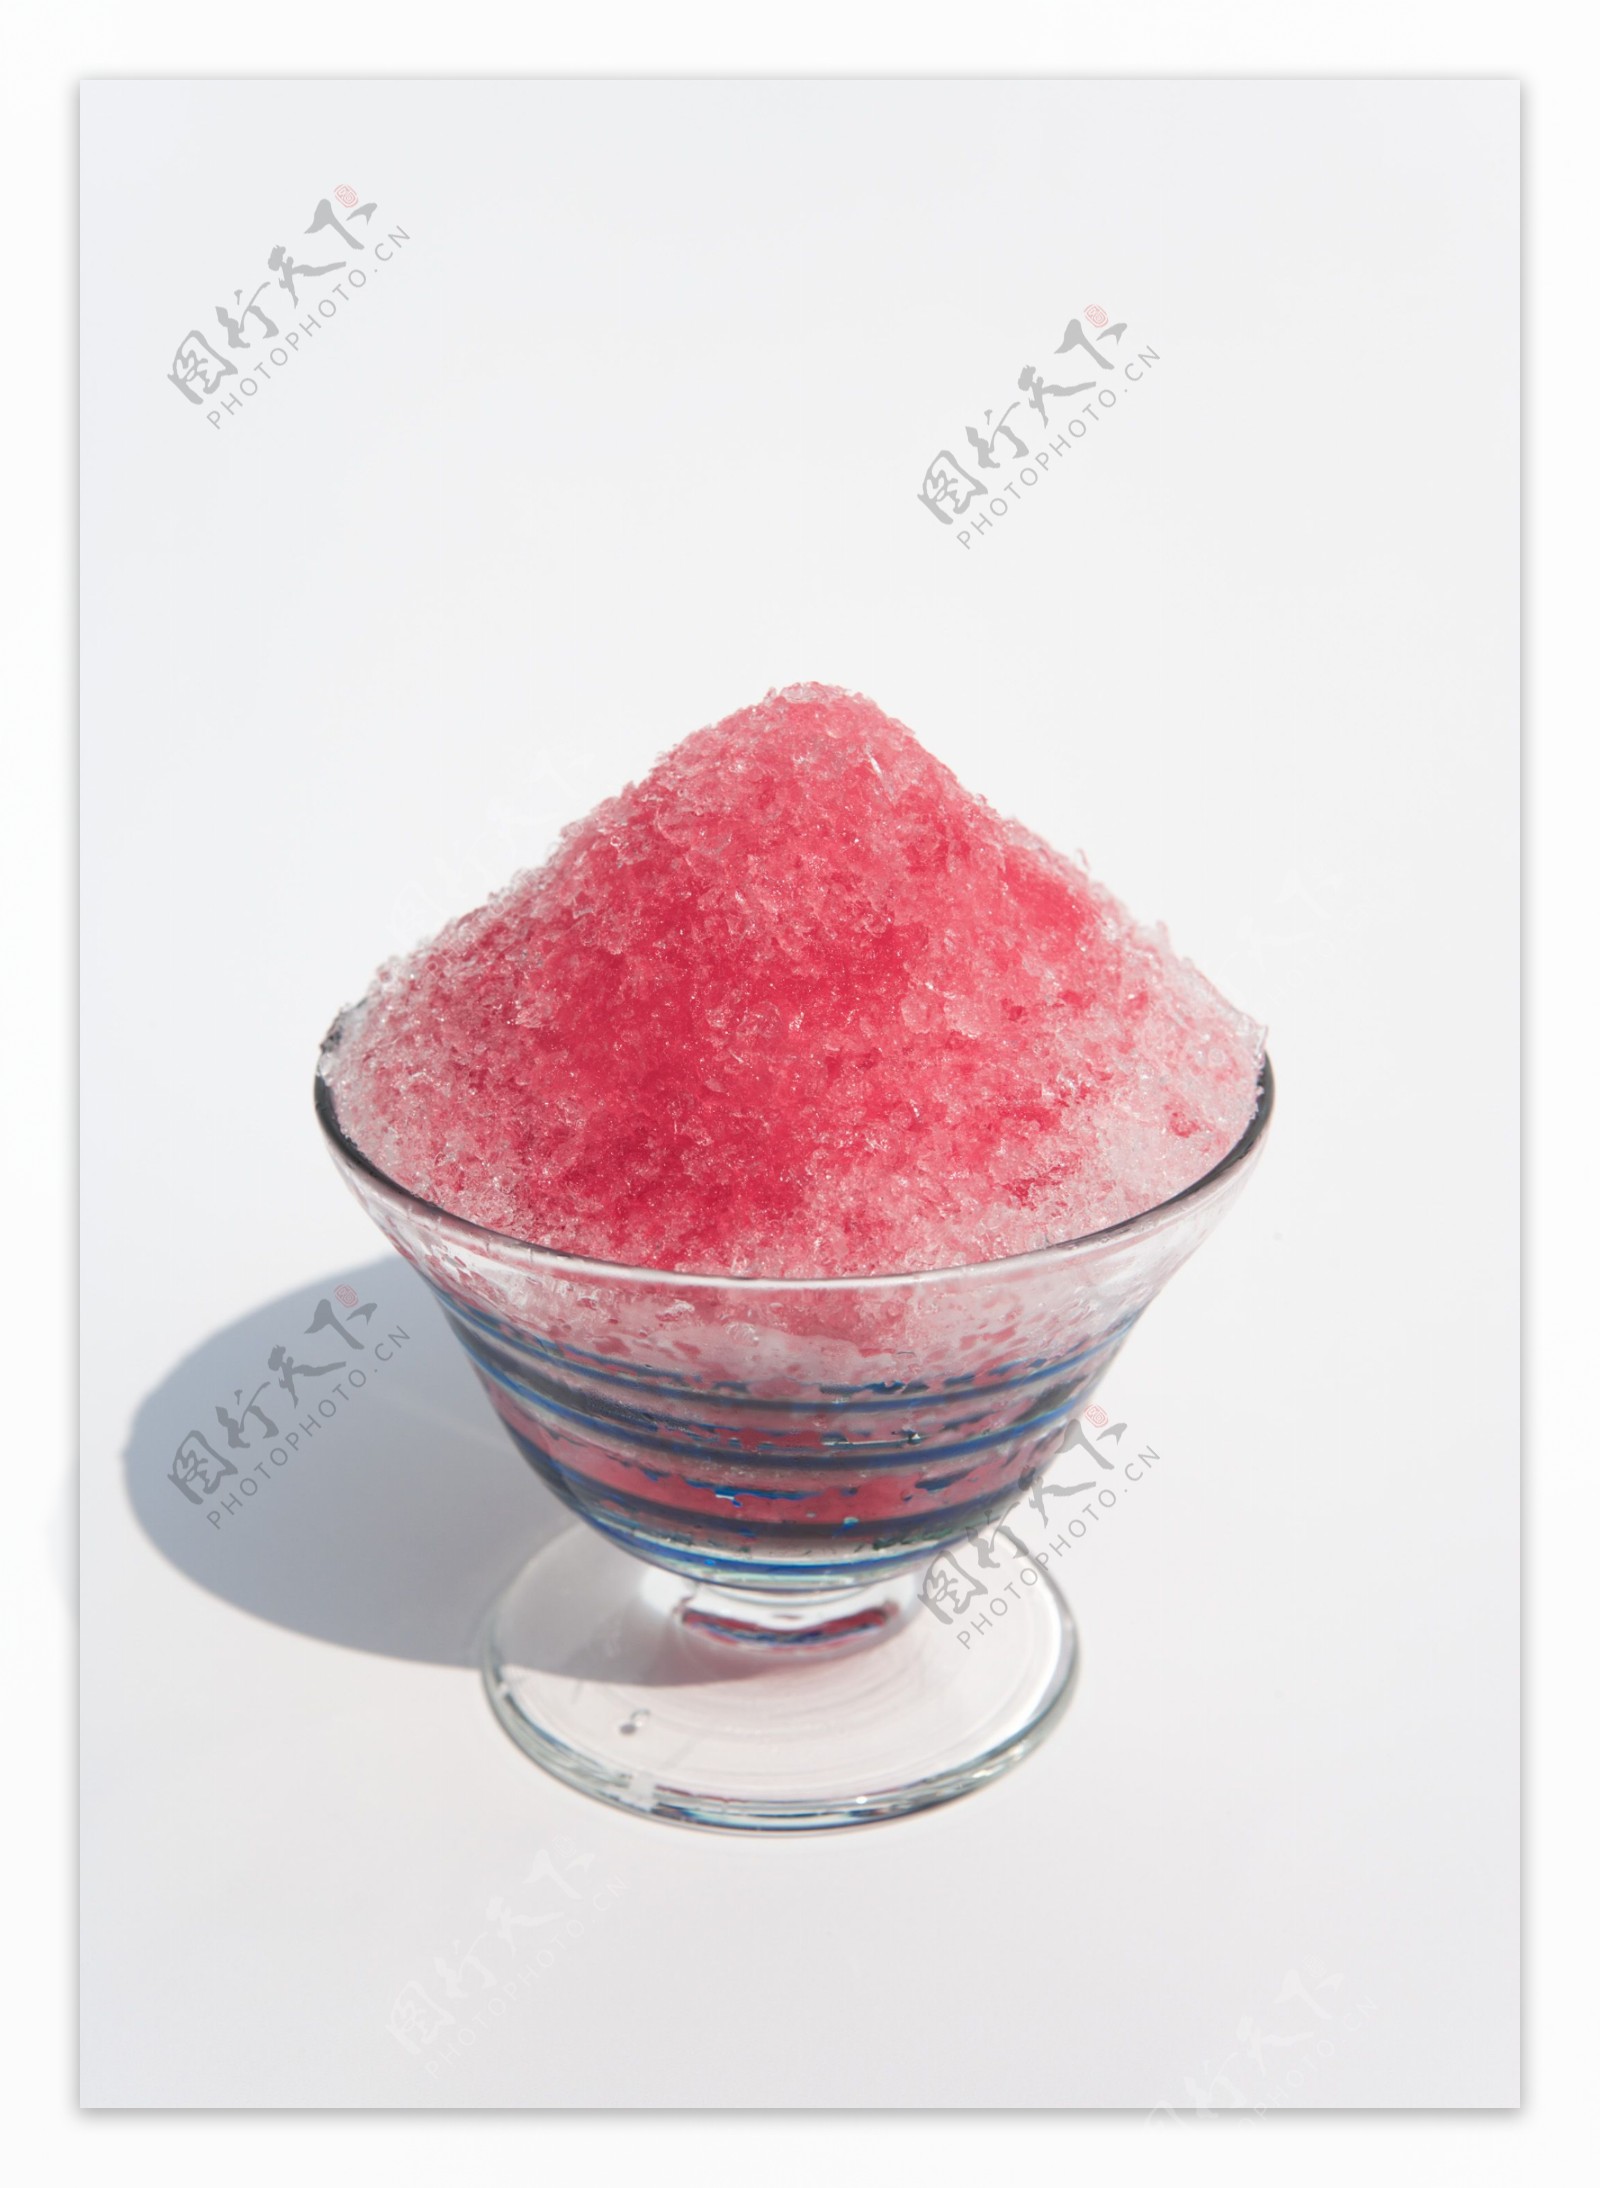 水果刨冰素材-水果刨冰图片-水果刨冰素材图片下载-觅知网